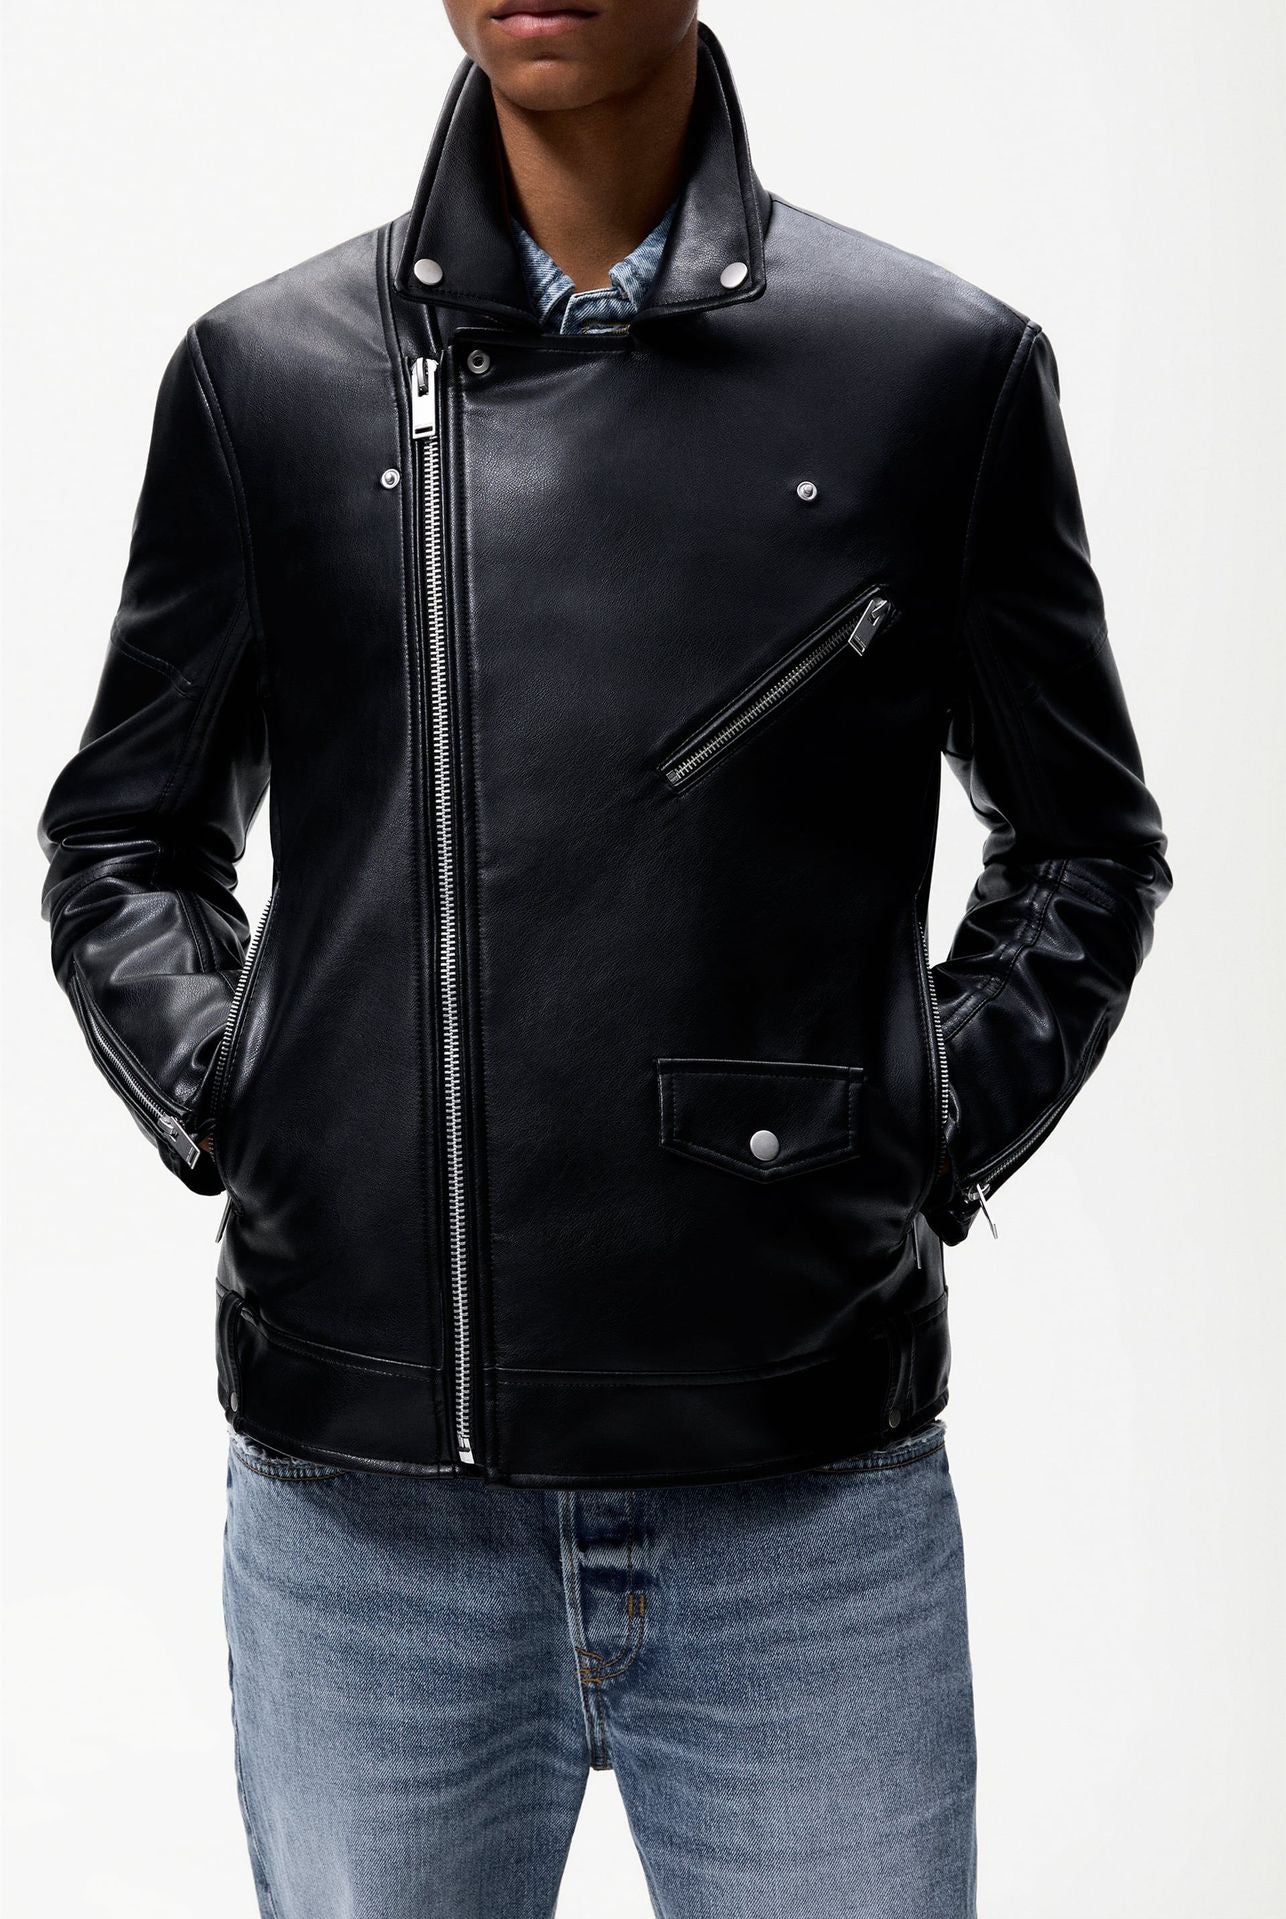 Thomas Jacket Faux Leather